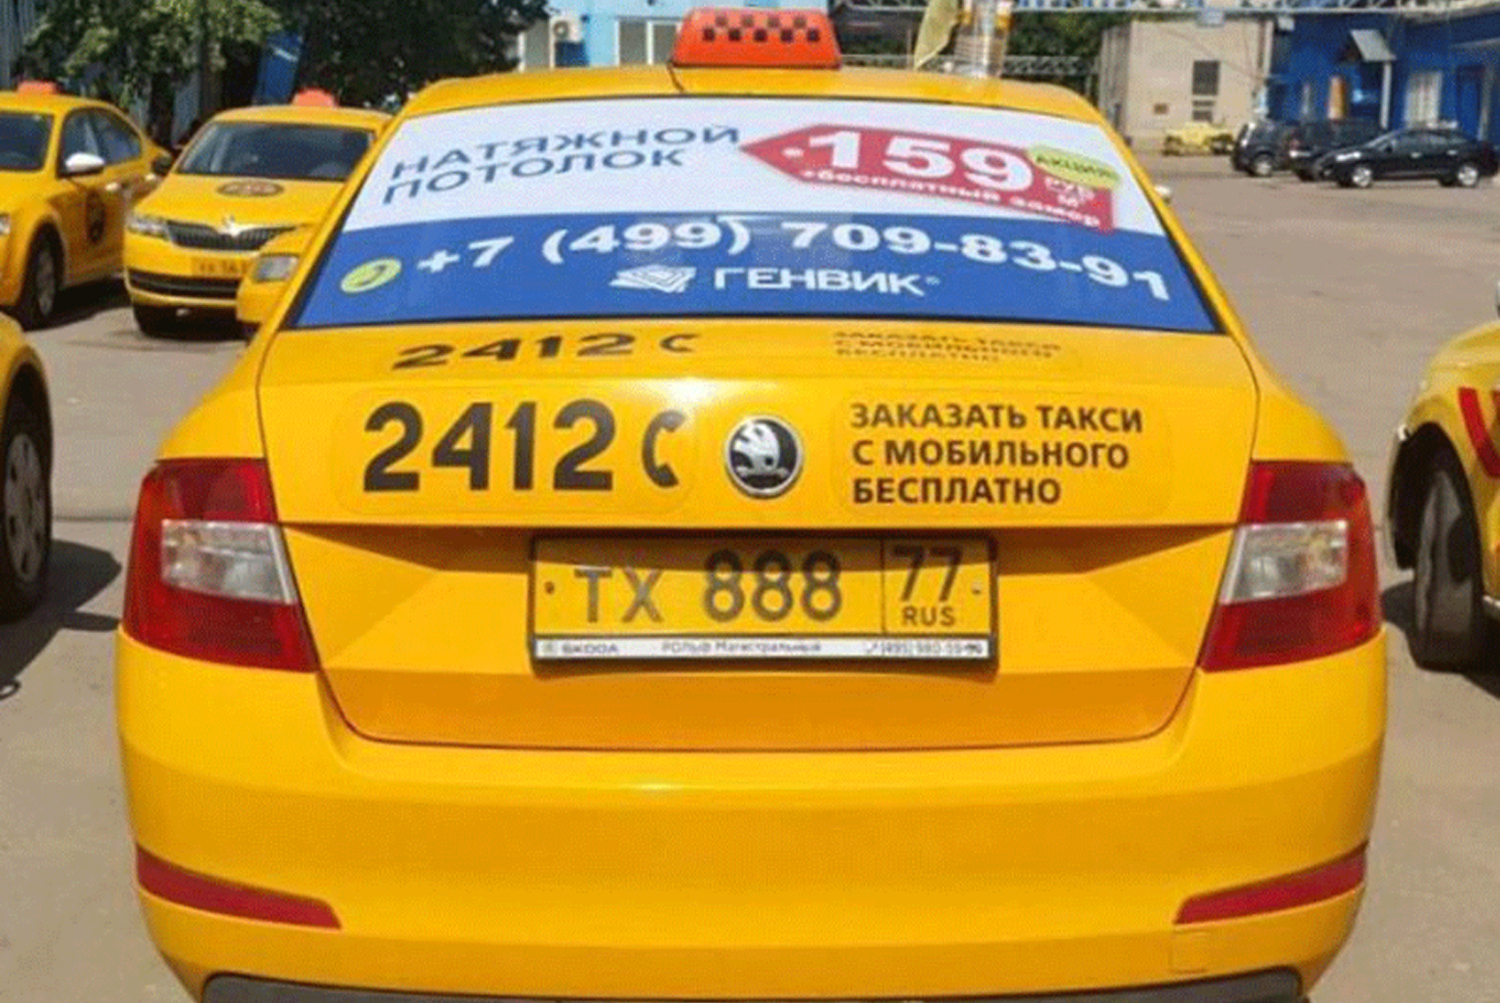 Такси онега номера. Реклама такси. Наклейки такси. Реклама такси на автомобиле. Номер такси.